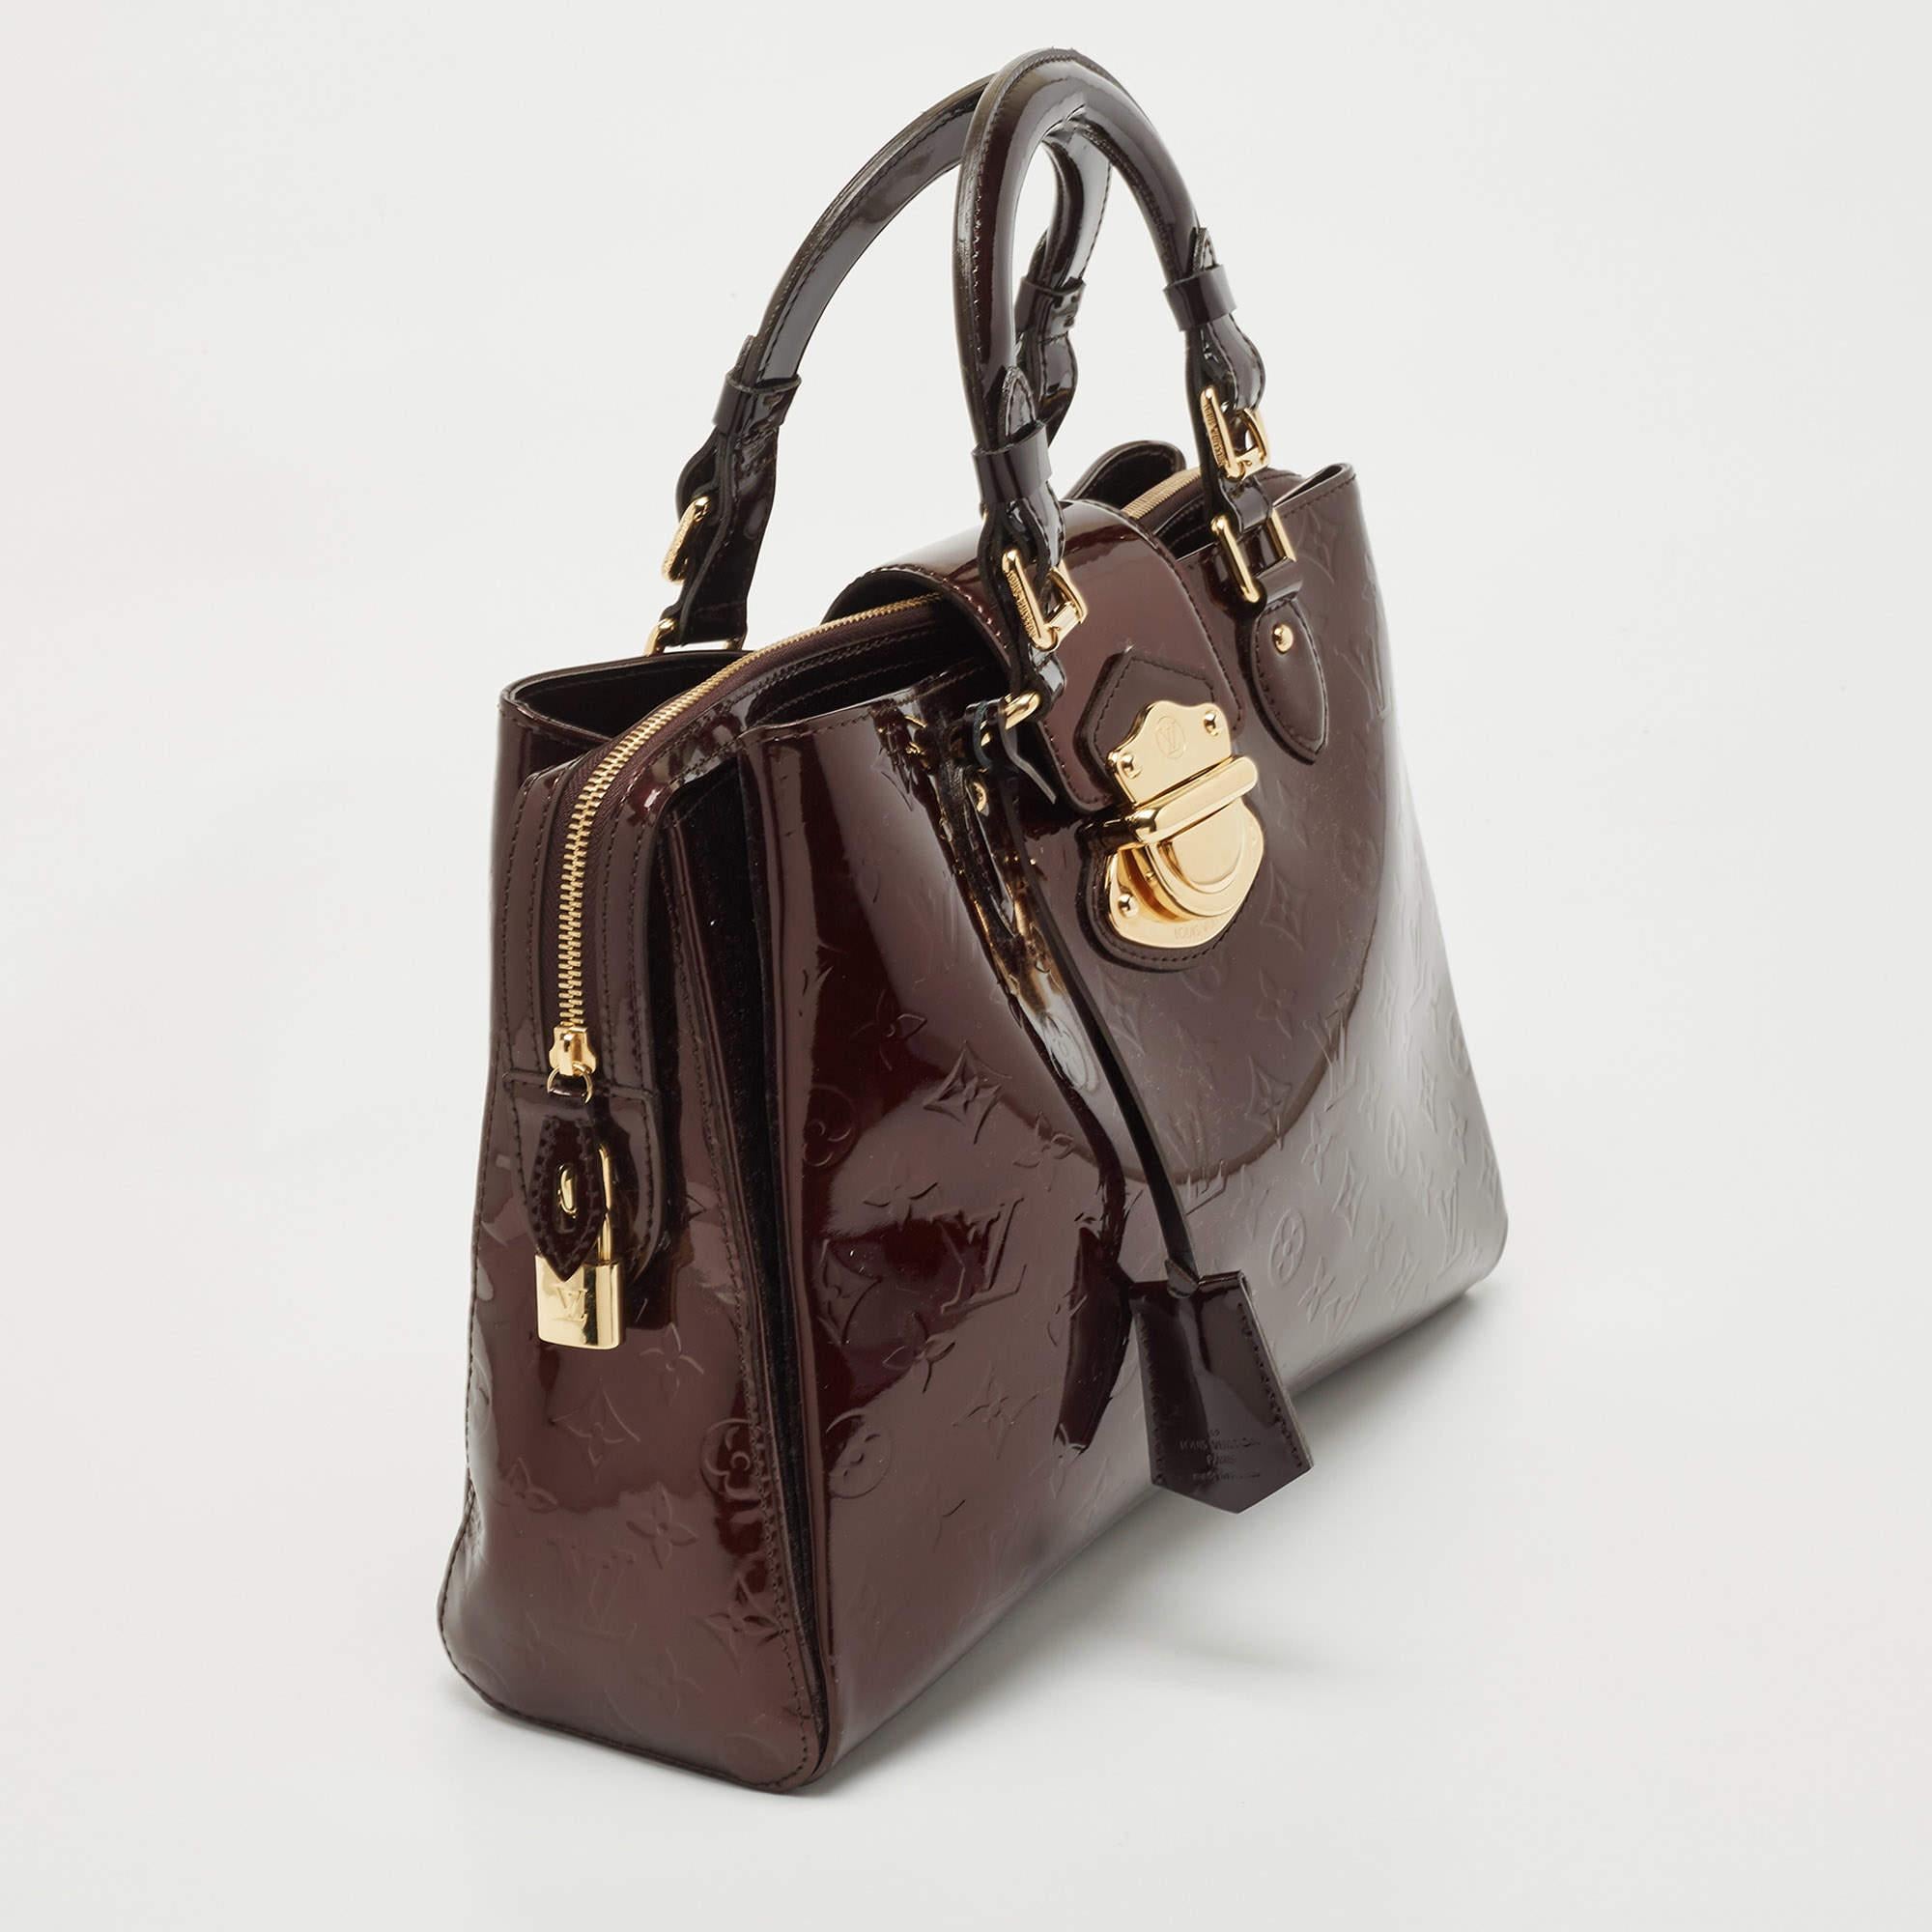 Amarante Monogrammierte Vernis Melrose Avenue Tasche von Louis Vuitton Herren